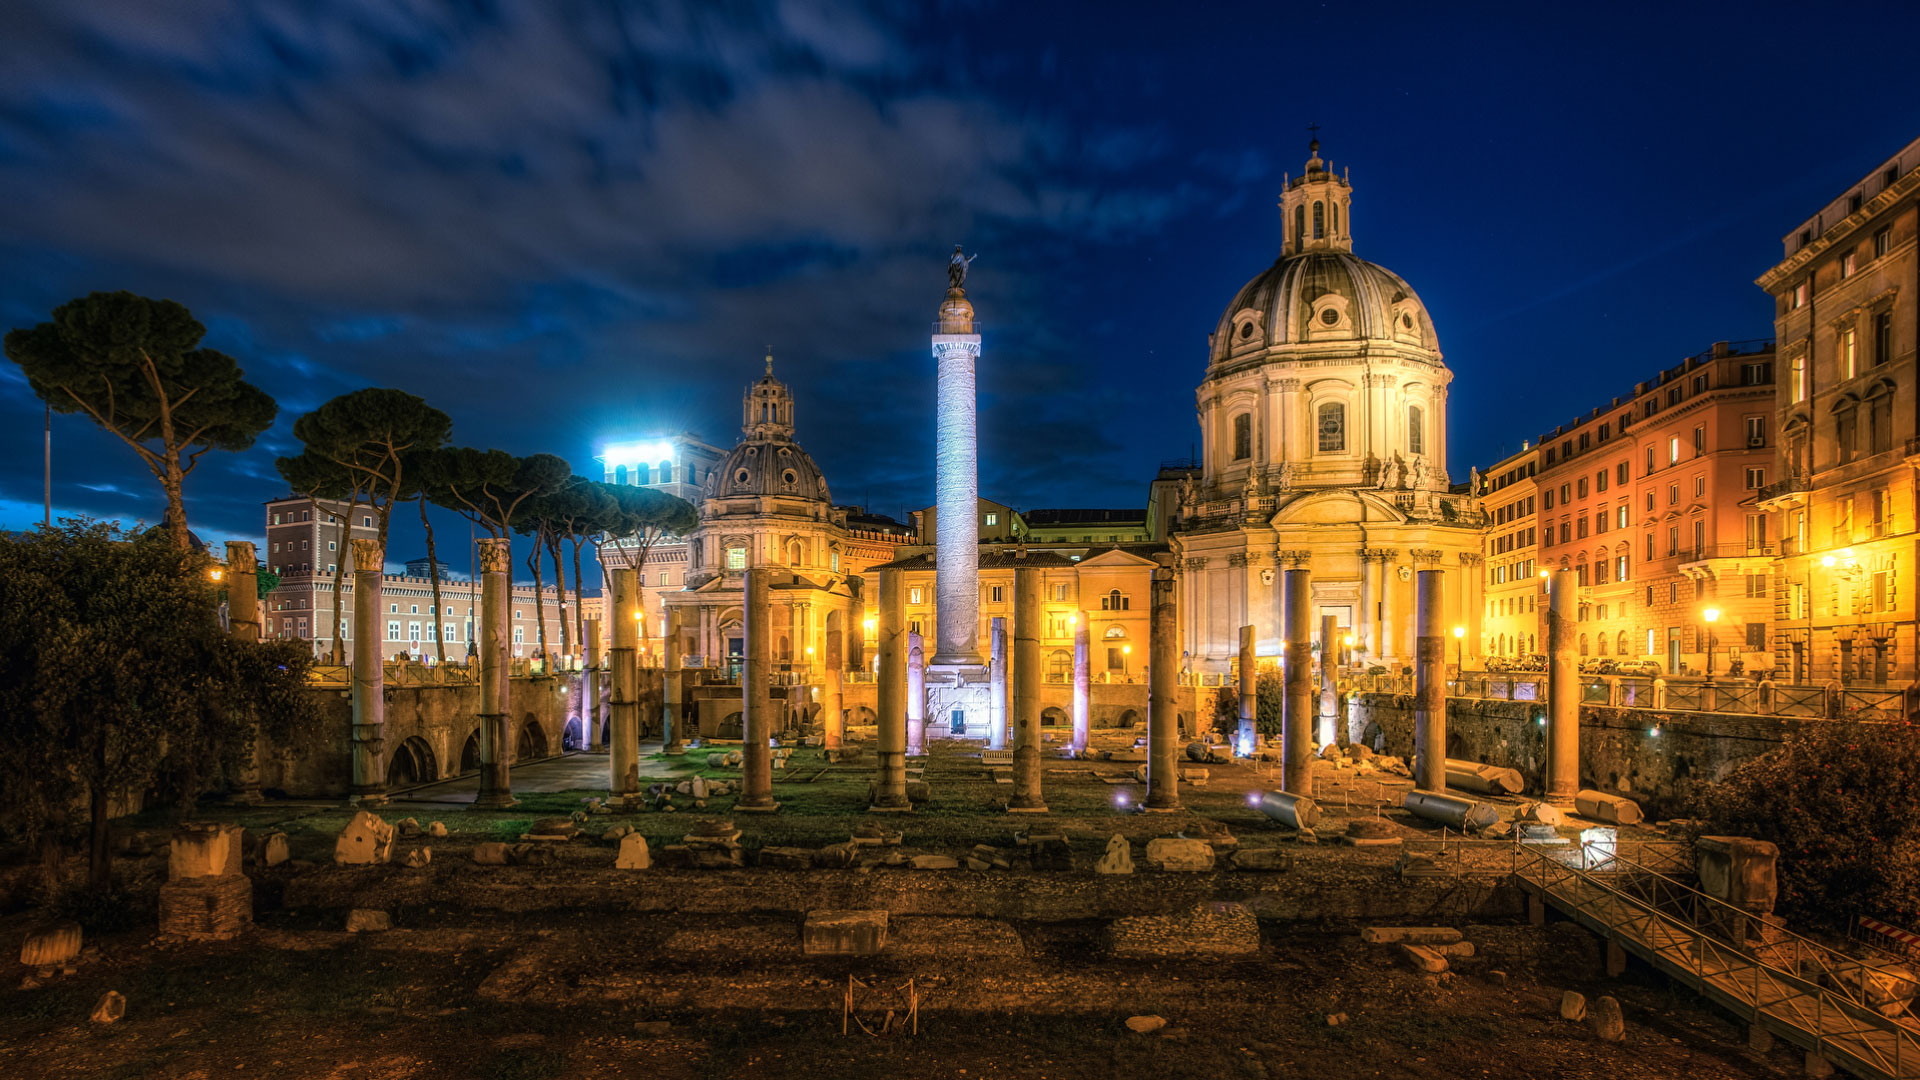 Rovine famose dell’Italia, Foro di Traiano a Roma illuminato di notte